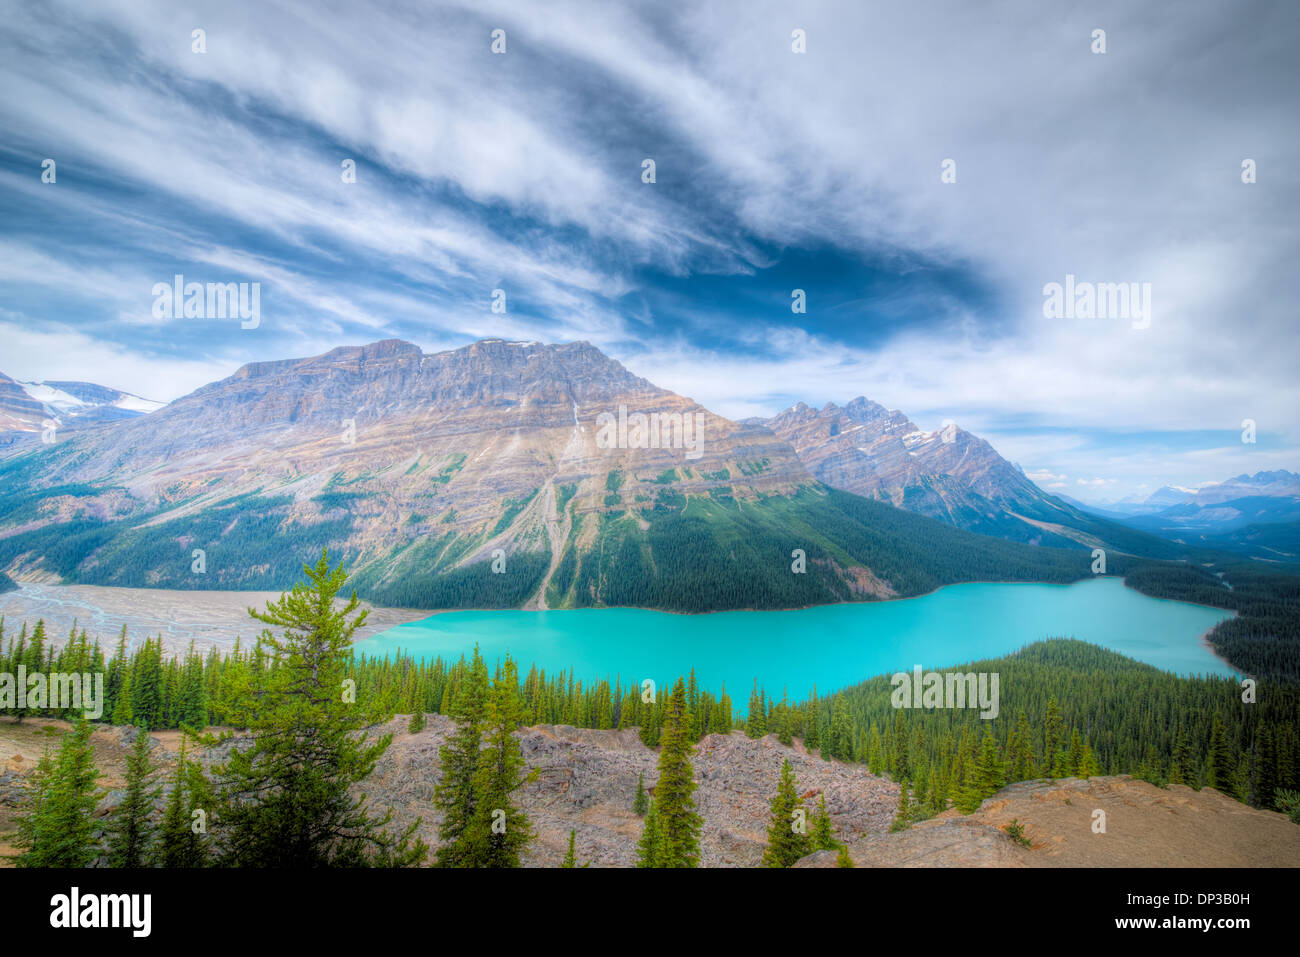 Lago Peyto, Icefields Parkway, Alberta, Canadá, Canadian Rockies, color azul de glaciales y cieno de piedra caliza. Foto de stock